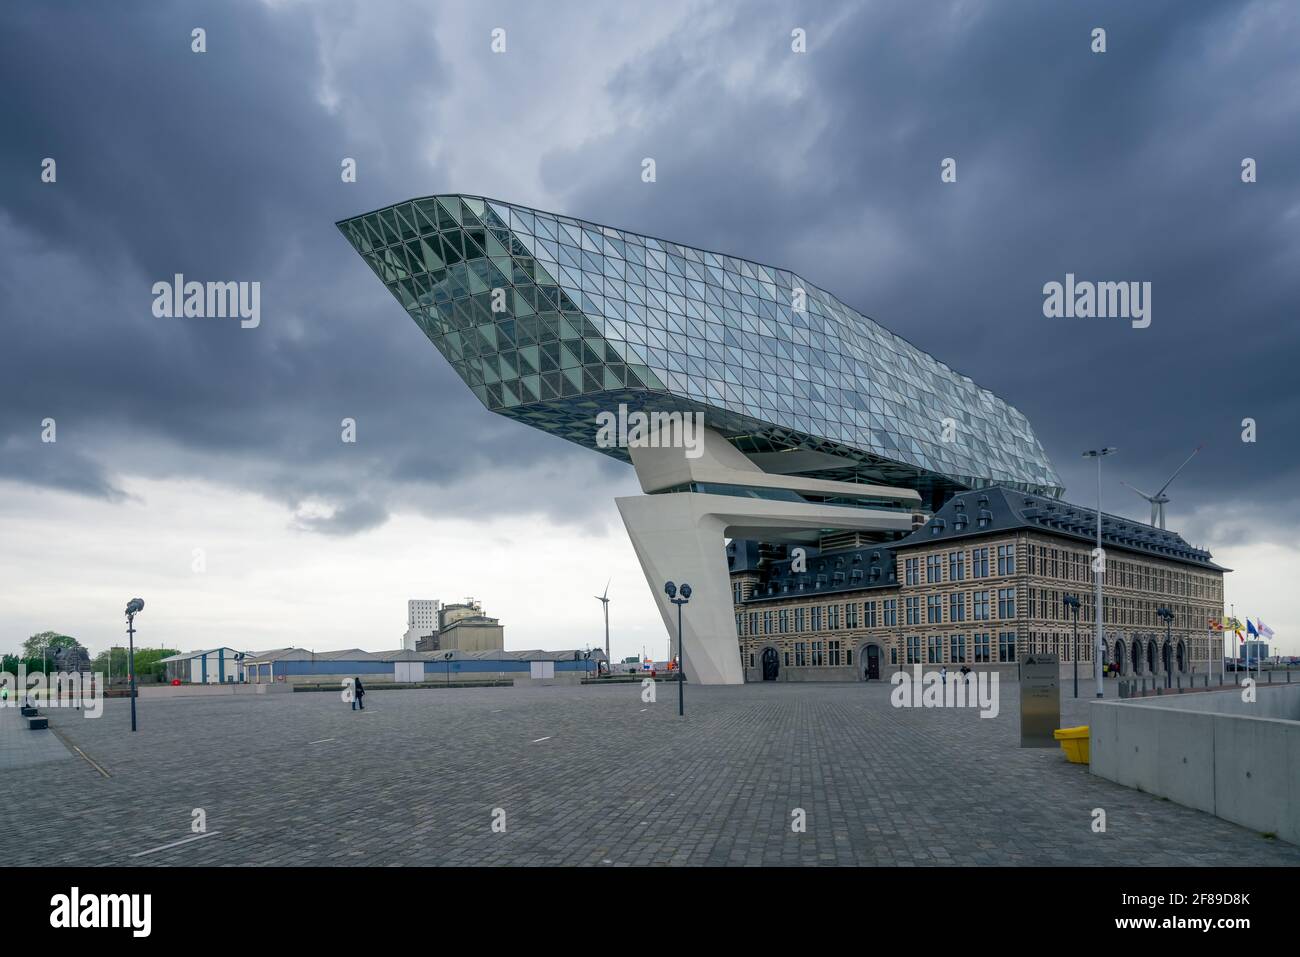 Anversa, Belgio - 04.29.2018: Edificio moderno dell'autorità portuale in una giornata nuvolosa e piovosa. Famosa architettura del Belgio. Foto Stock